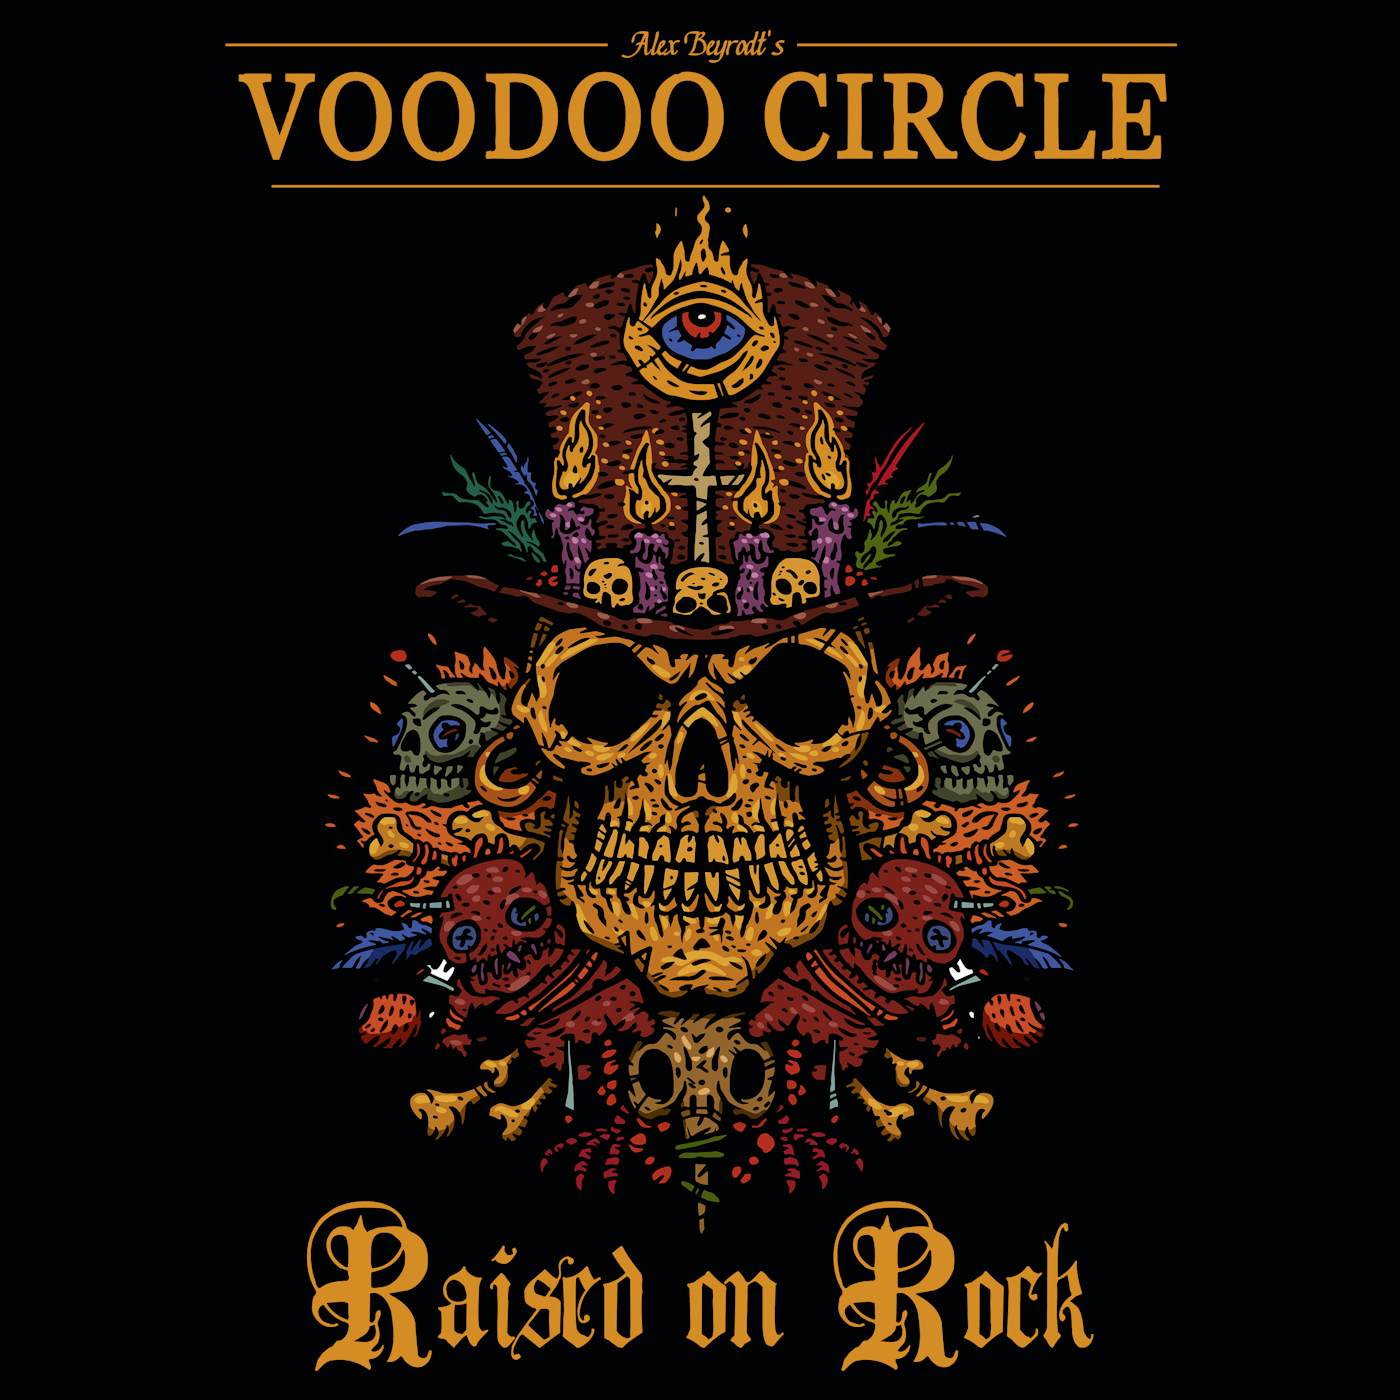 Voodoo Circle RAISED ON ROCK CD